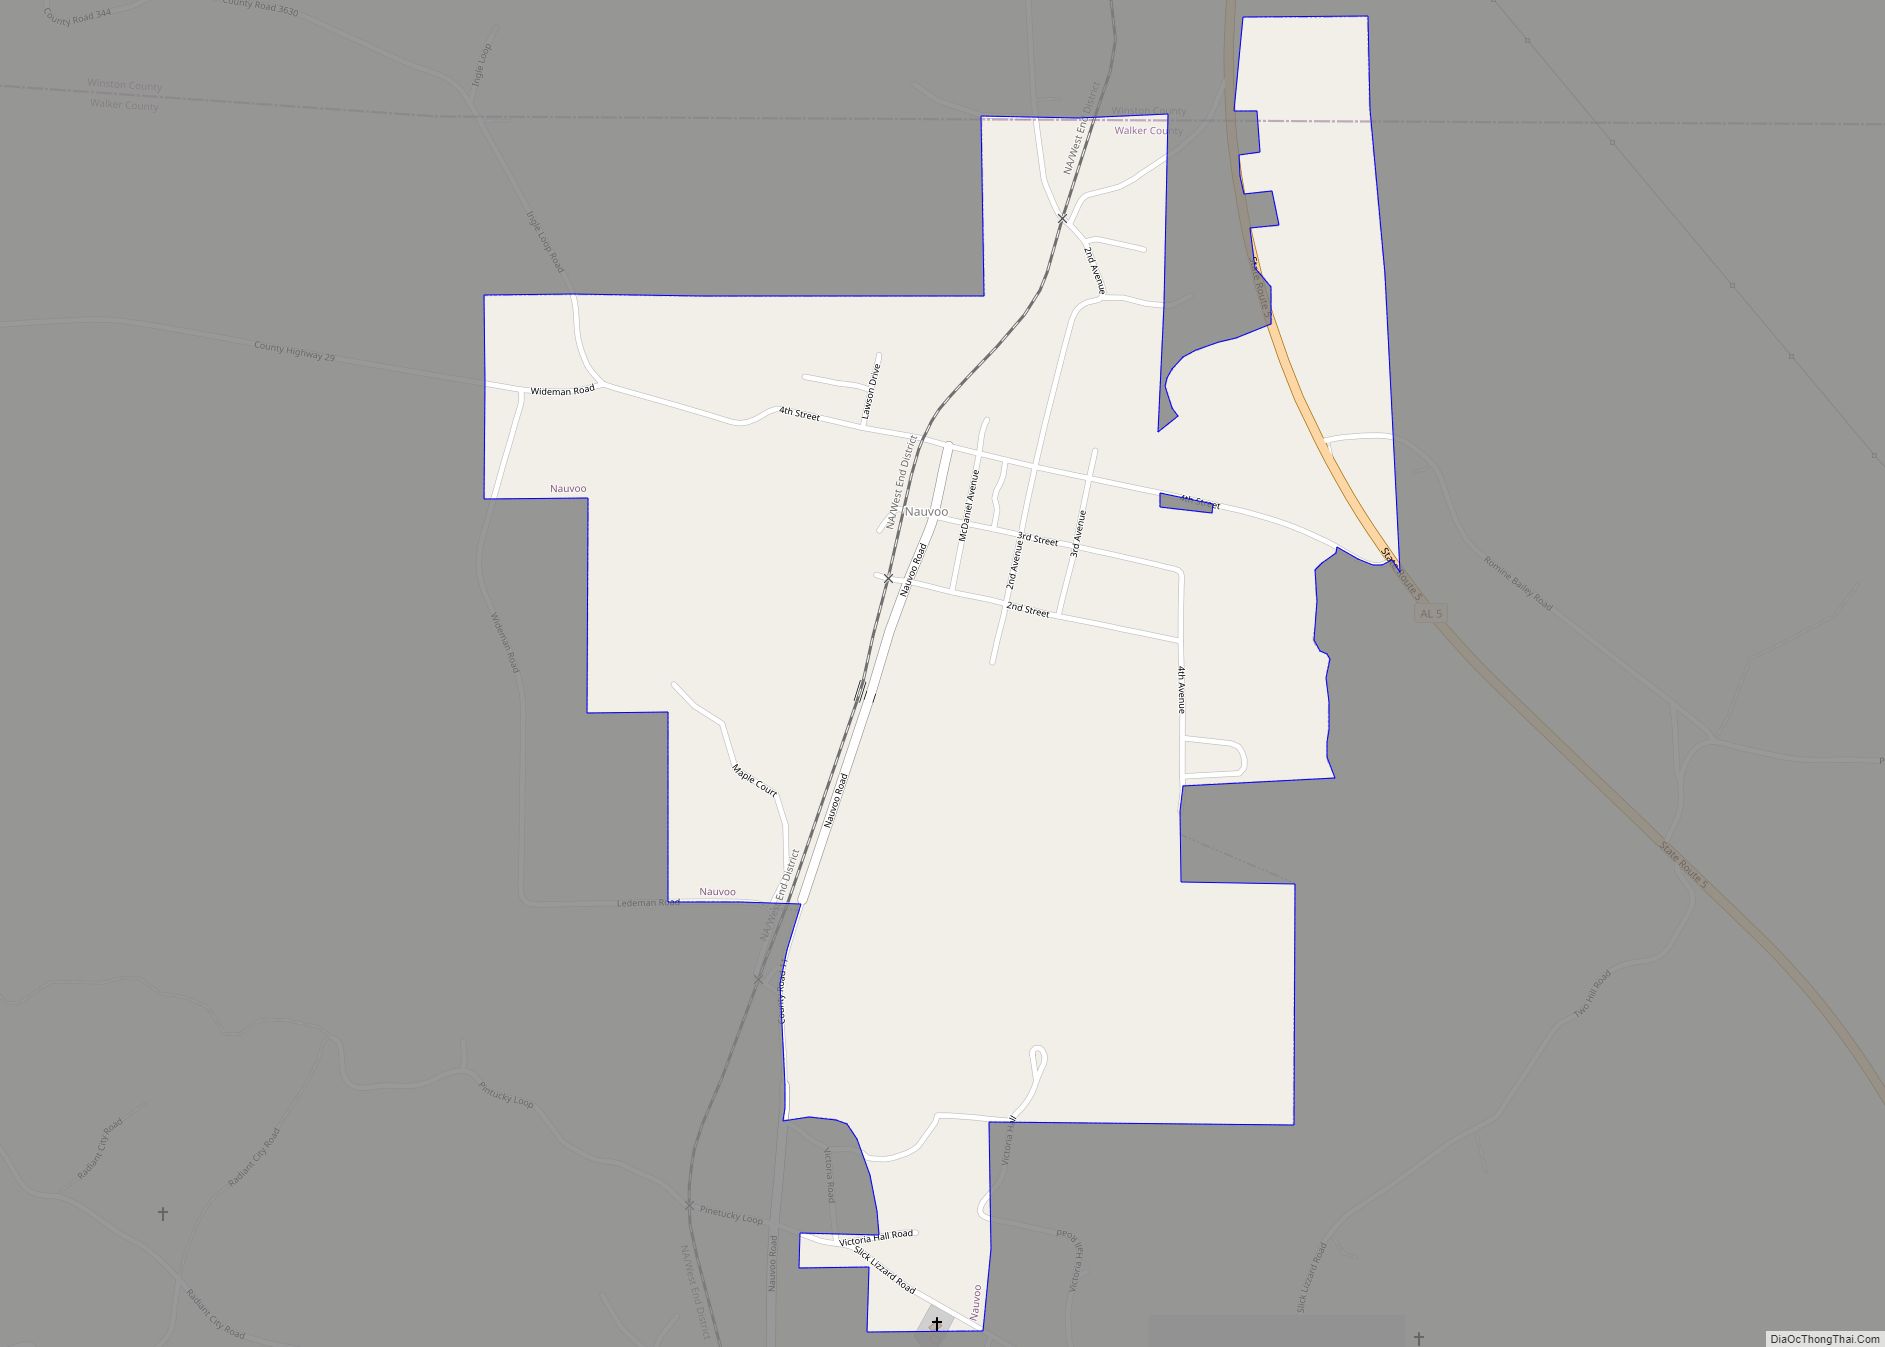 Map of Nauvoo town, Alabama